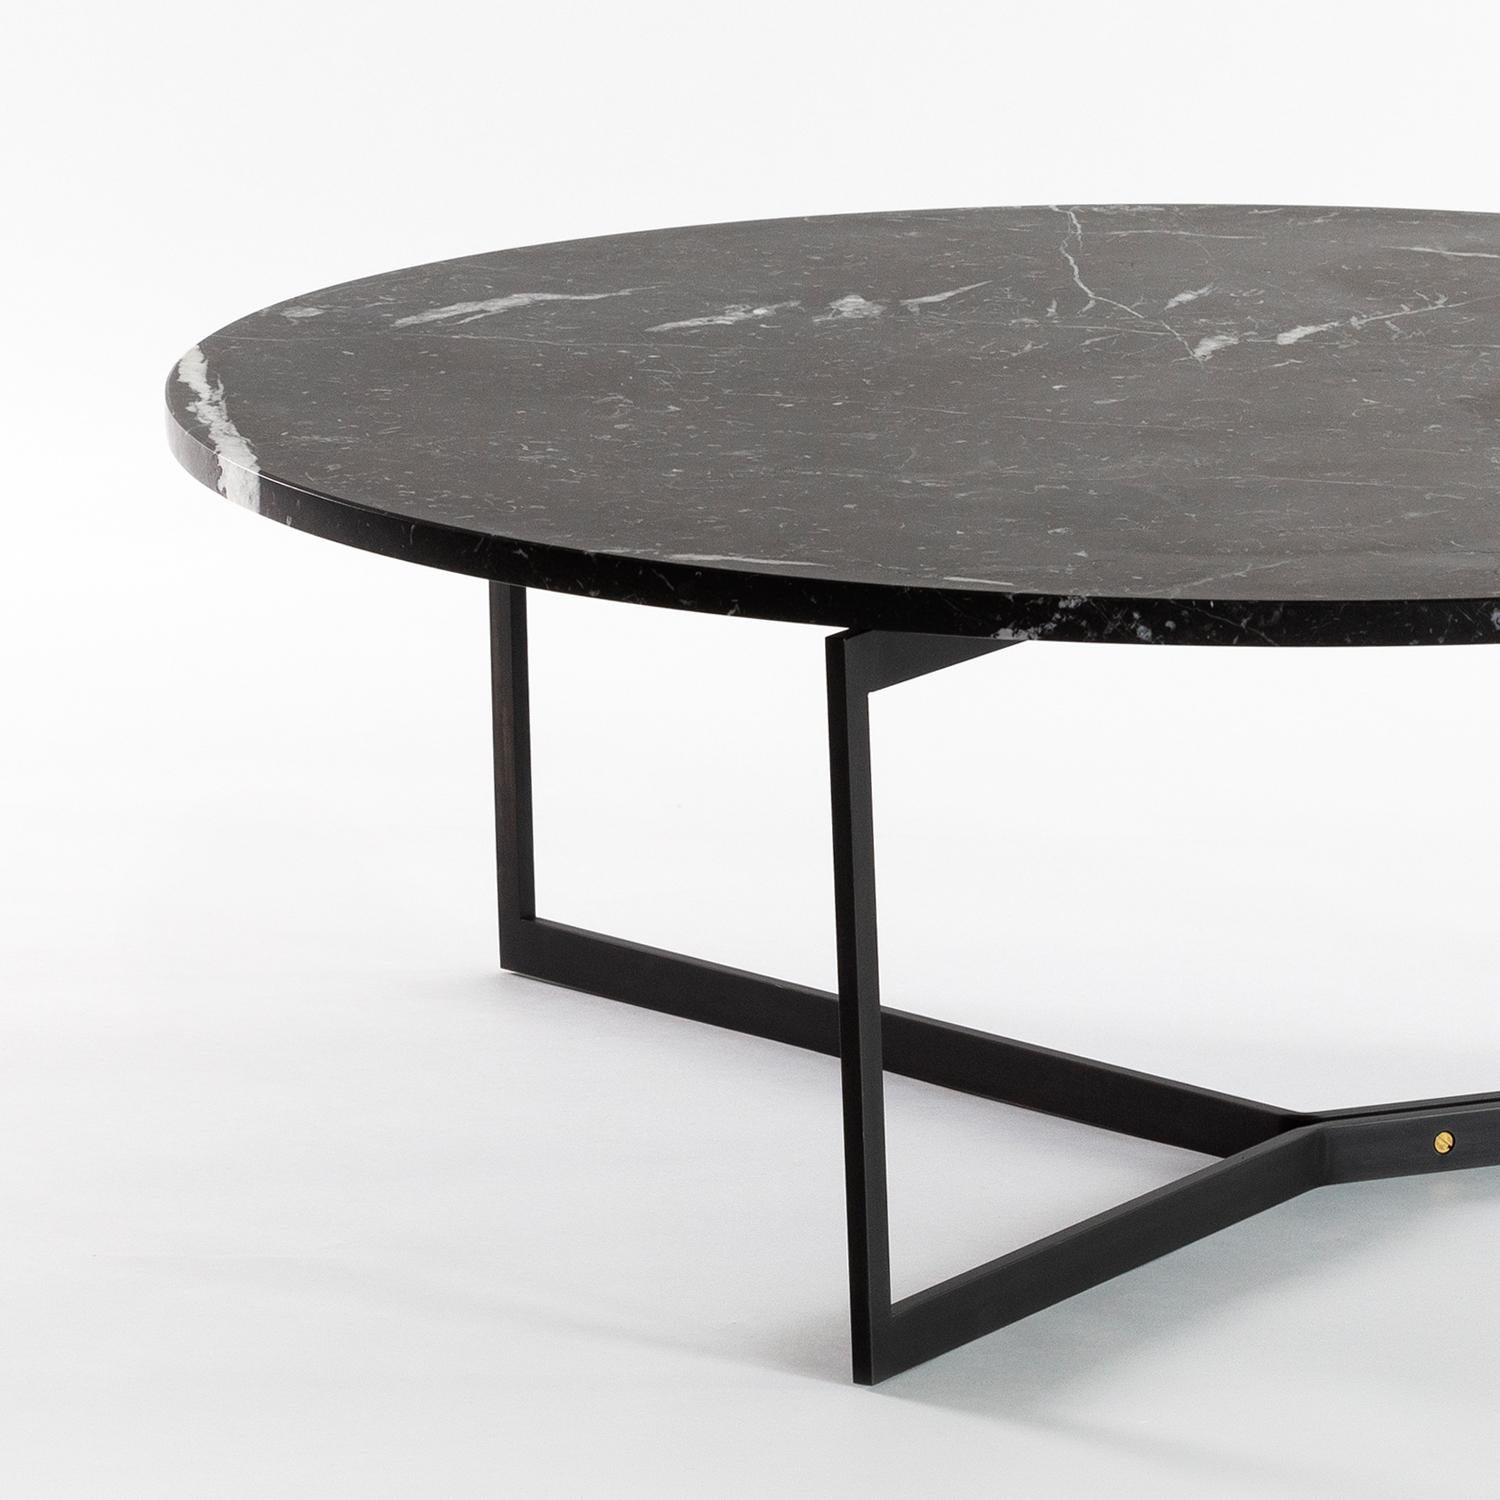 AT14 est une table basse fabriquée à la main avec une base métallique élégante et un plateau en marbre poli ou en bois dur.

Représenté en marbre Nero Marquina et en acier laminé à froid noirci avec des accents de bronze. 

Dimensions : 36